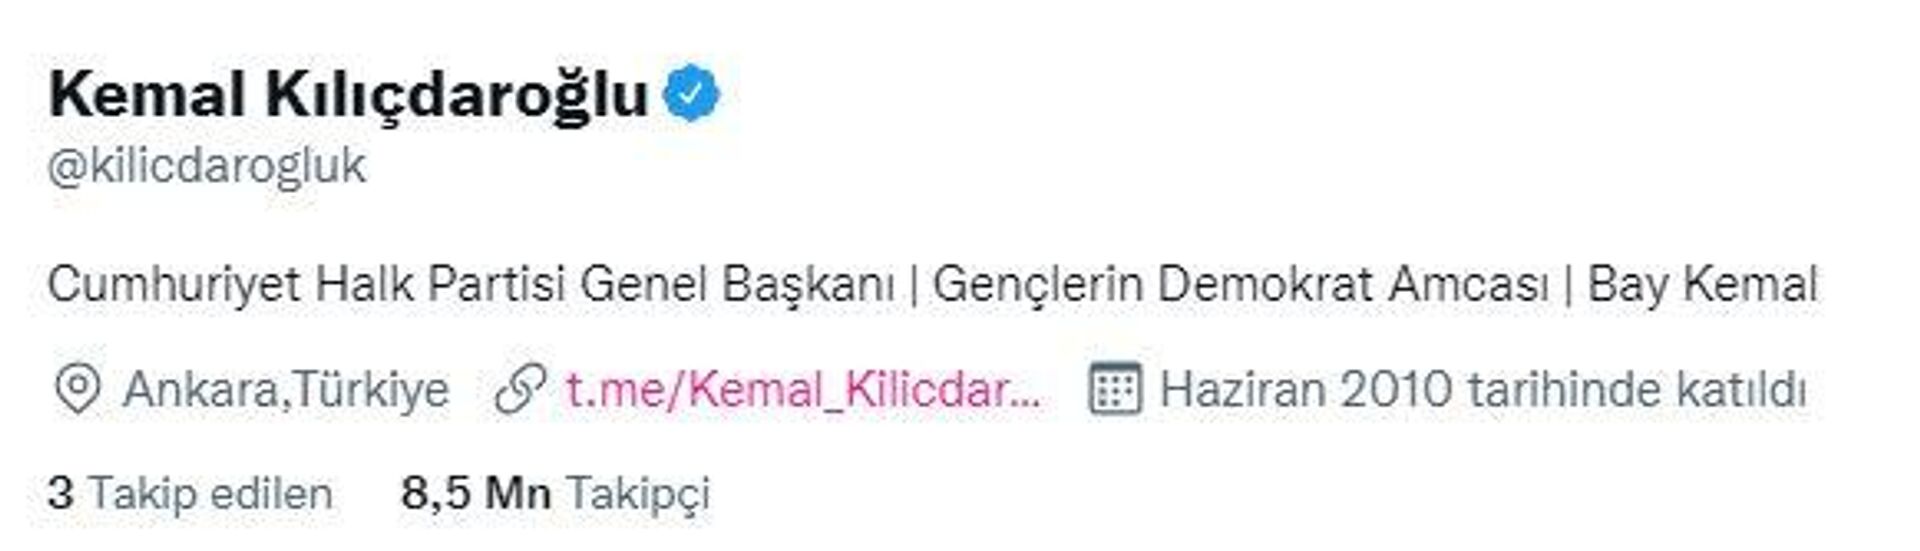 Kılıçdaroğlu, Twitter profiline 'Bay Kemal' ifadesini ekledi - Sputnik Türkiye, 1920, 24.07.2022